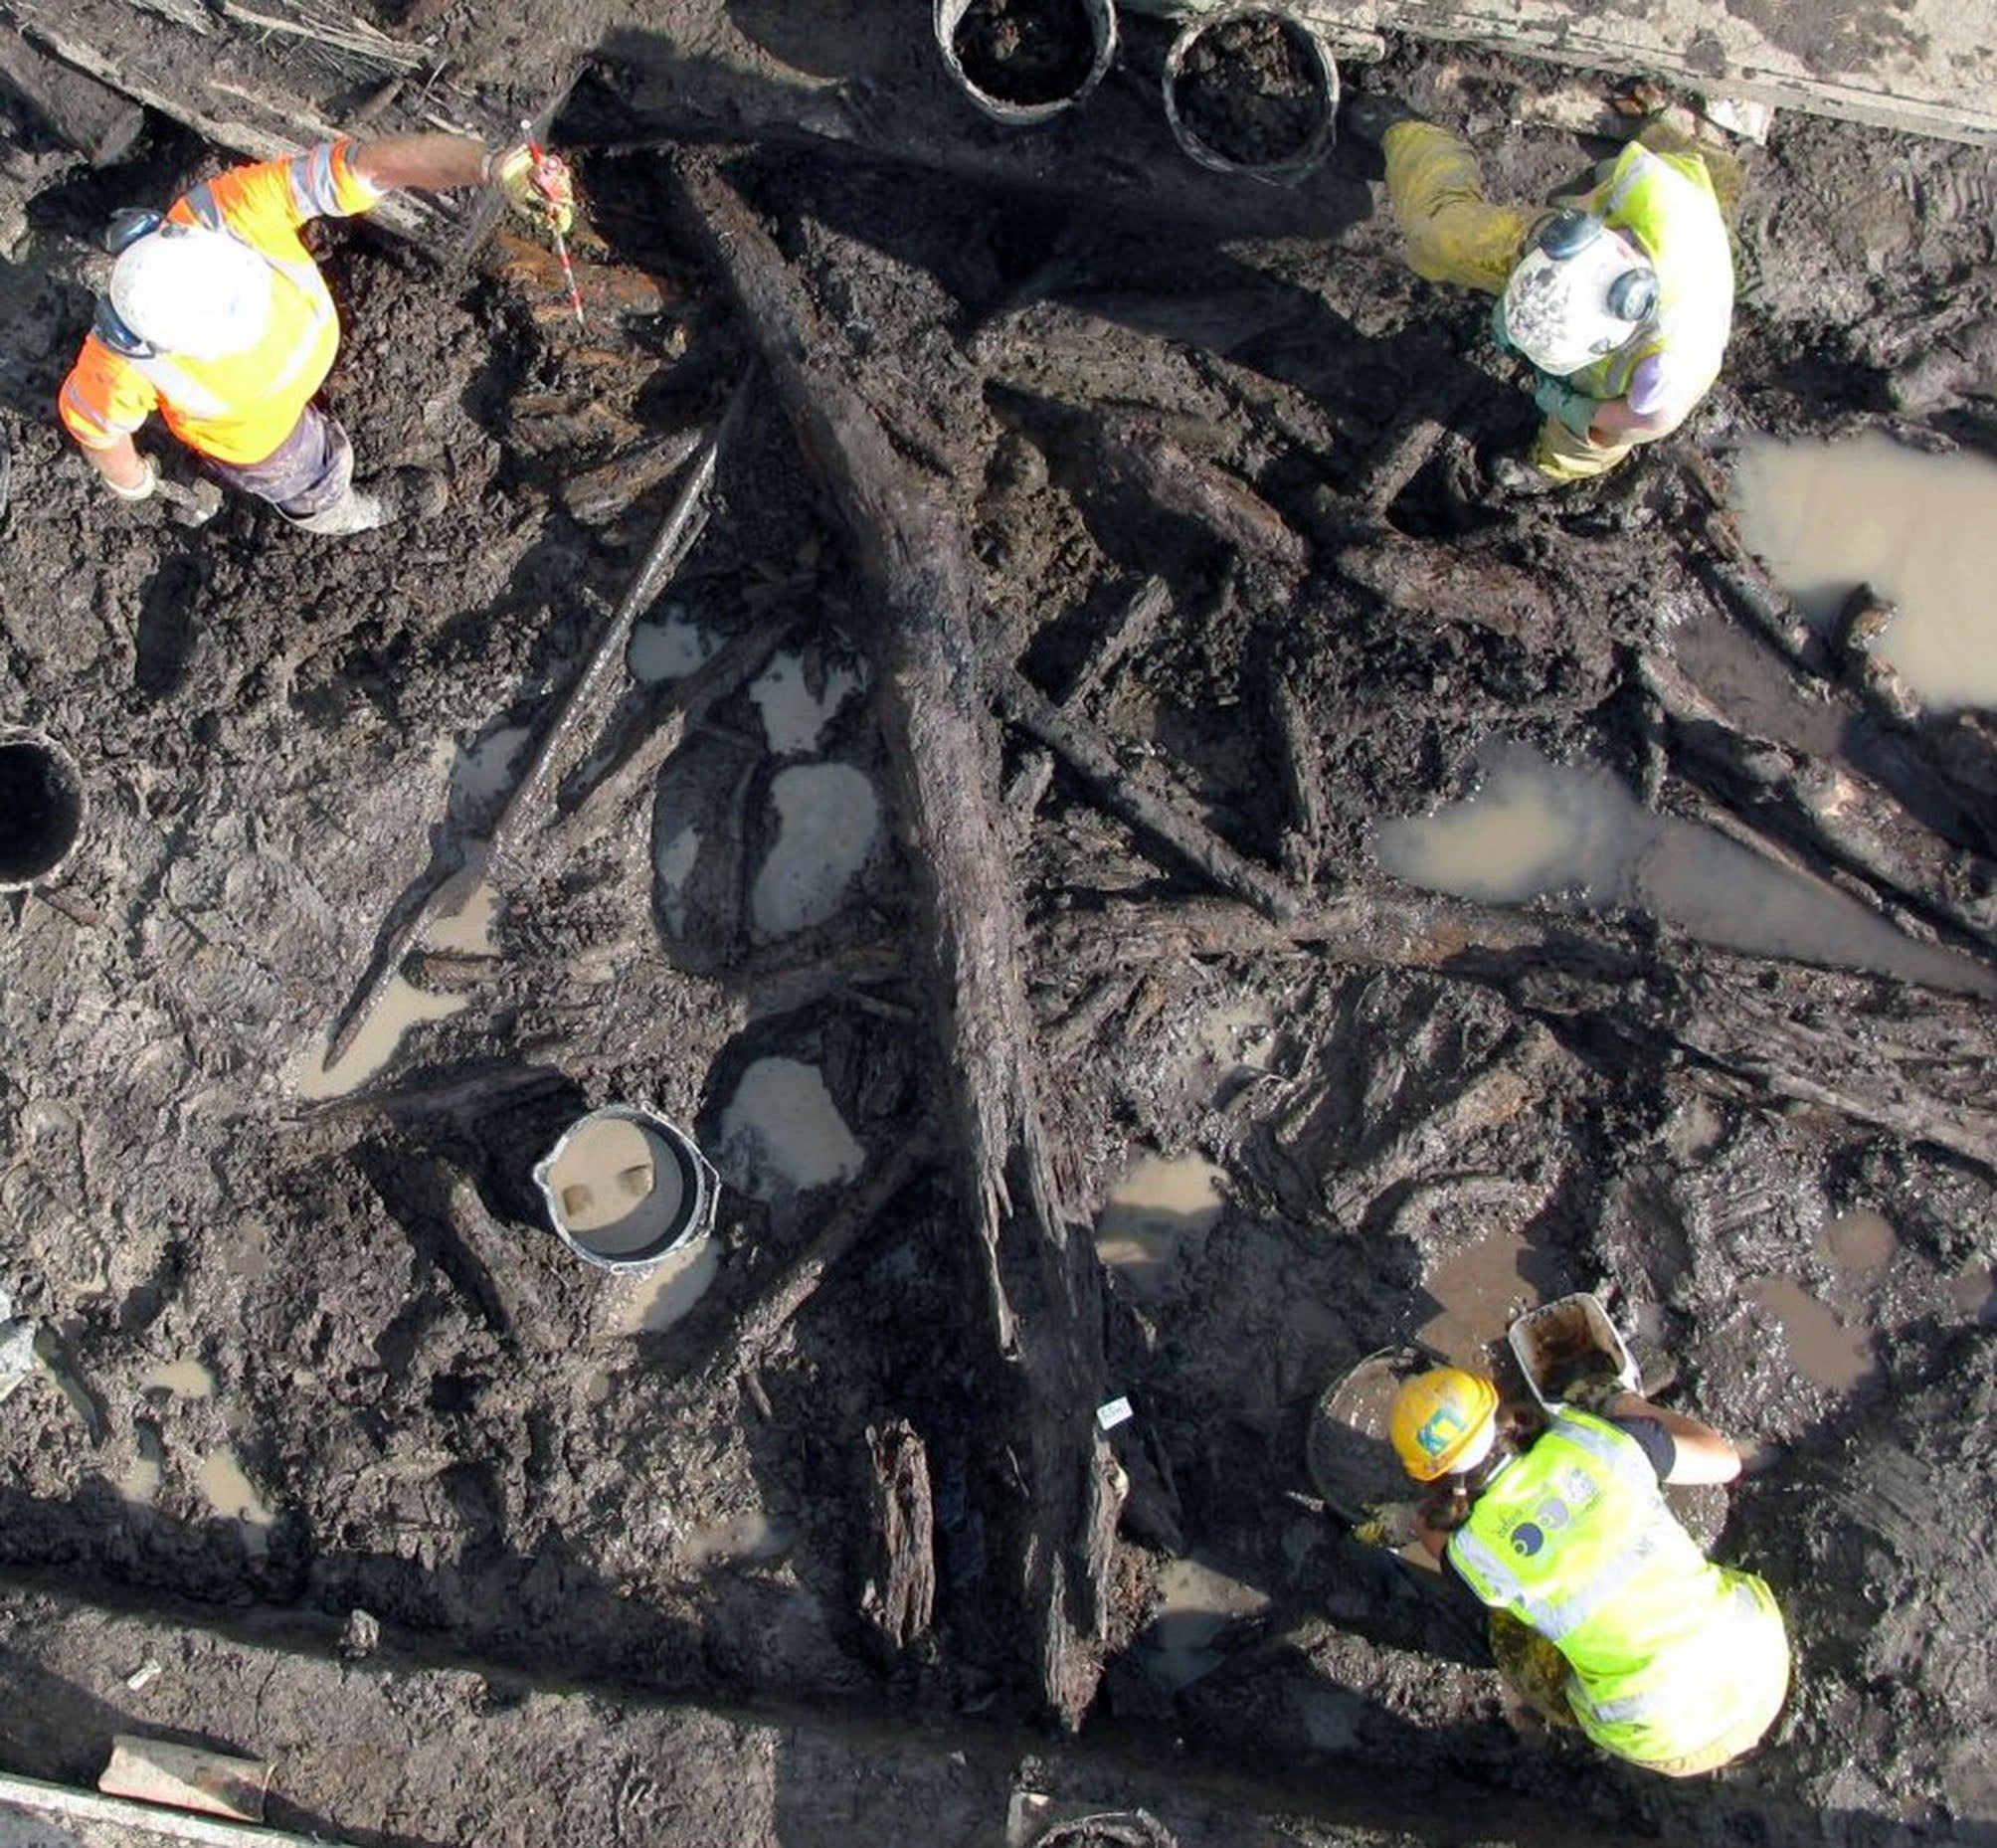 El equipo de arqueología de Oxford excava los objetos de madera excepcionalmente conservados en el suelo anegado de Stainton West, cerca de Carlisle. Estos objetos datan del Mesolítico y el Neolítico, y rara vez se hallan en tan buen estado desde la perspectiva de la conservación